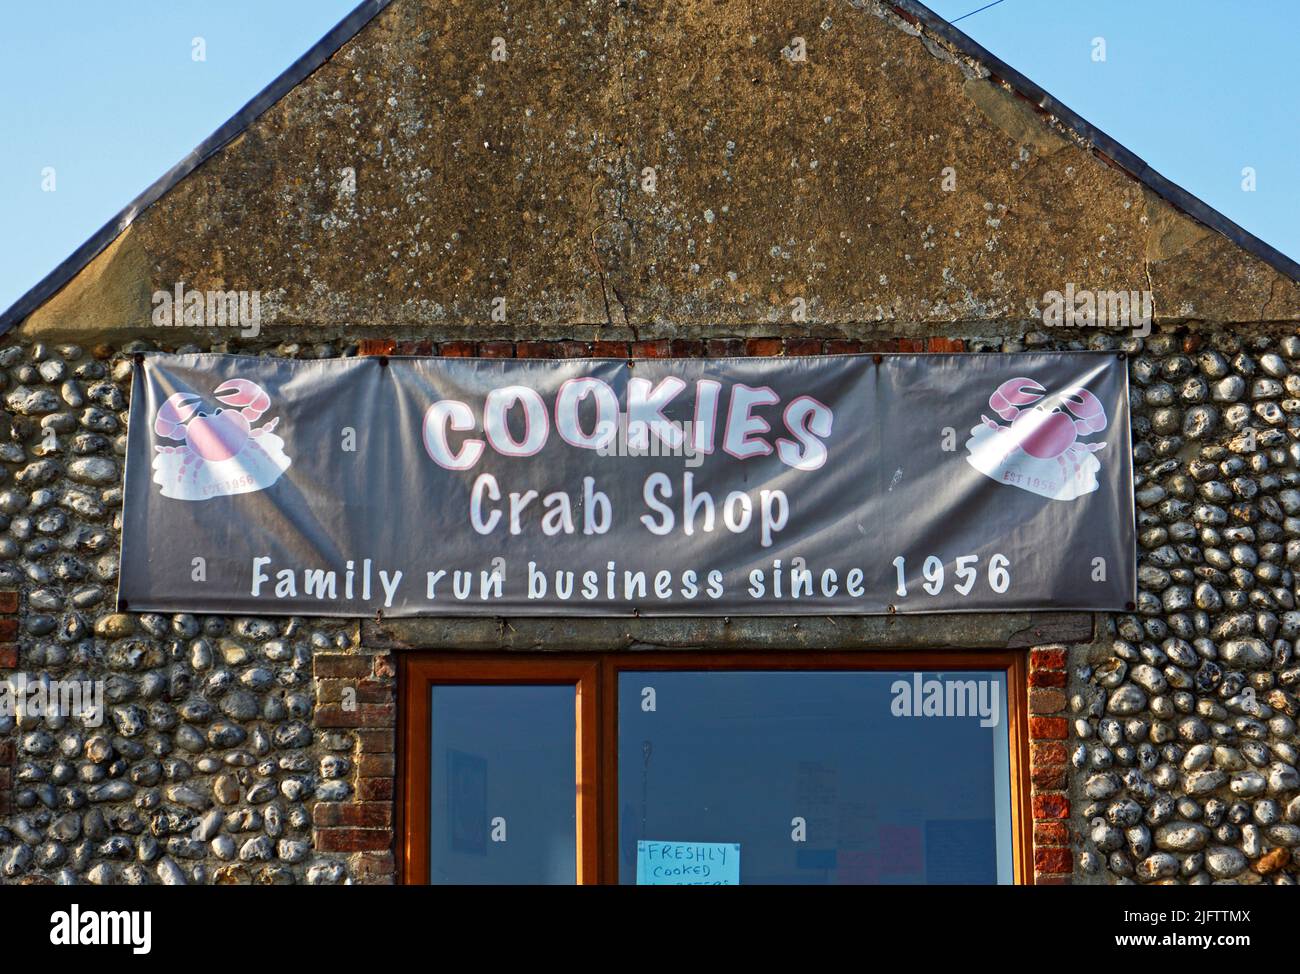 Un cartel para Cookies Crab Shop en la carretera de la costa A149 en North Norfolk en Salthouse, Norfolk, Inglaterra, Reino Unido. Foto de stock